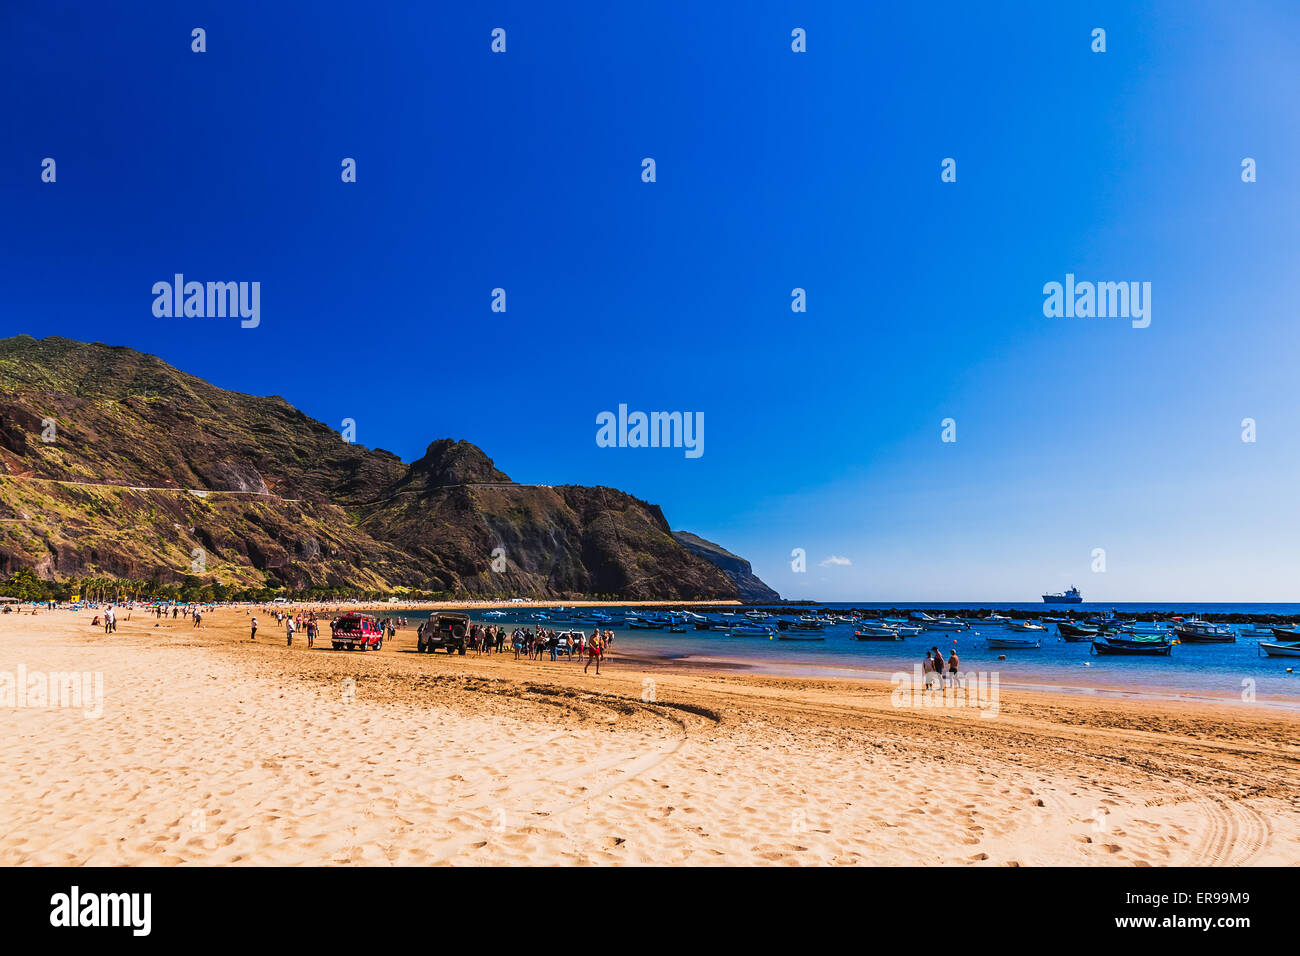 La plage Las Teresitas avec du sable jaune sur l'autre rive de l'océan Atlantique ou sur l'île de Ténérife, Espagne Banque D'Images